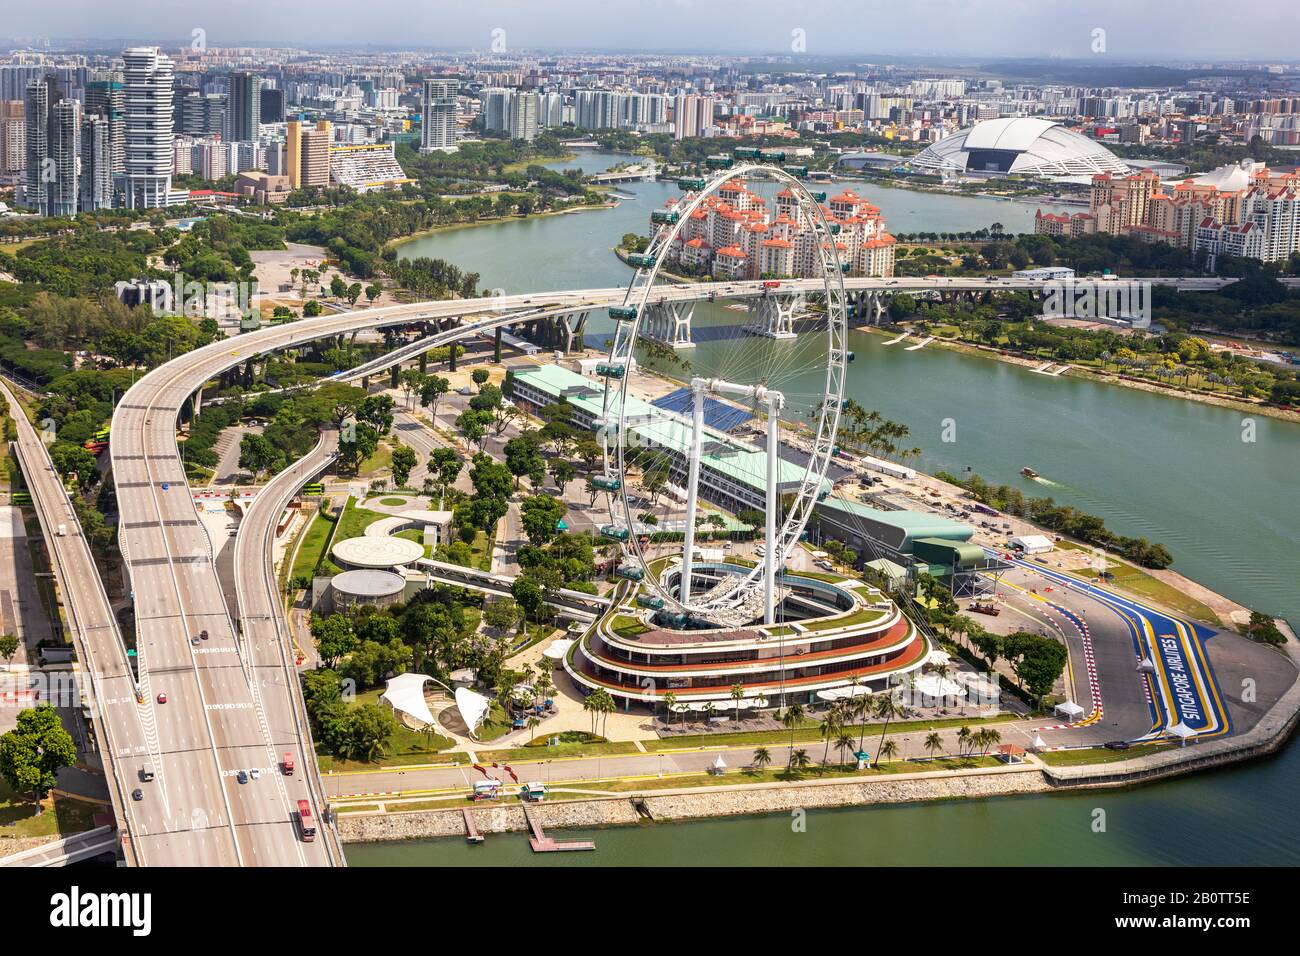 Blick auf die Skyline von Singapur mit dem Riesenrad des Singapore Flyer und der Rennbahn zum Singapore Grande Prix, Singapur Stockfoto